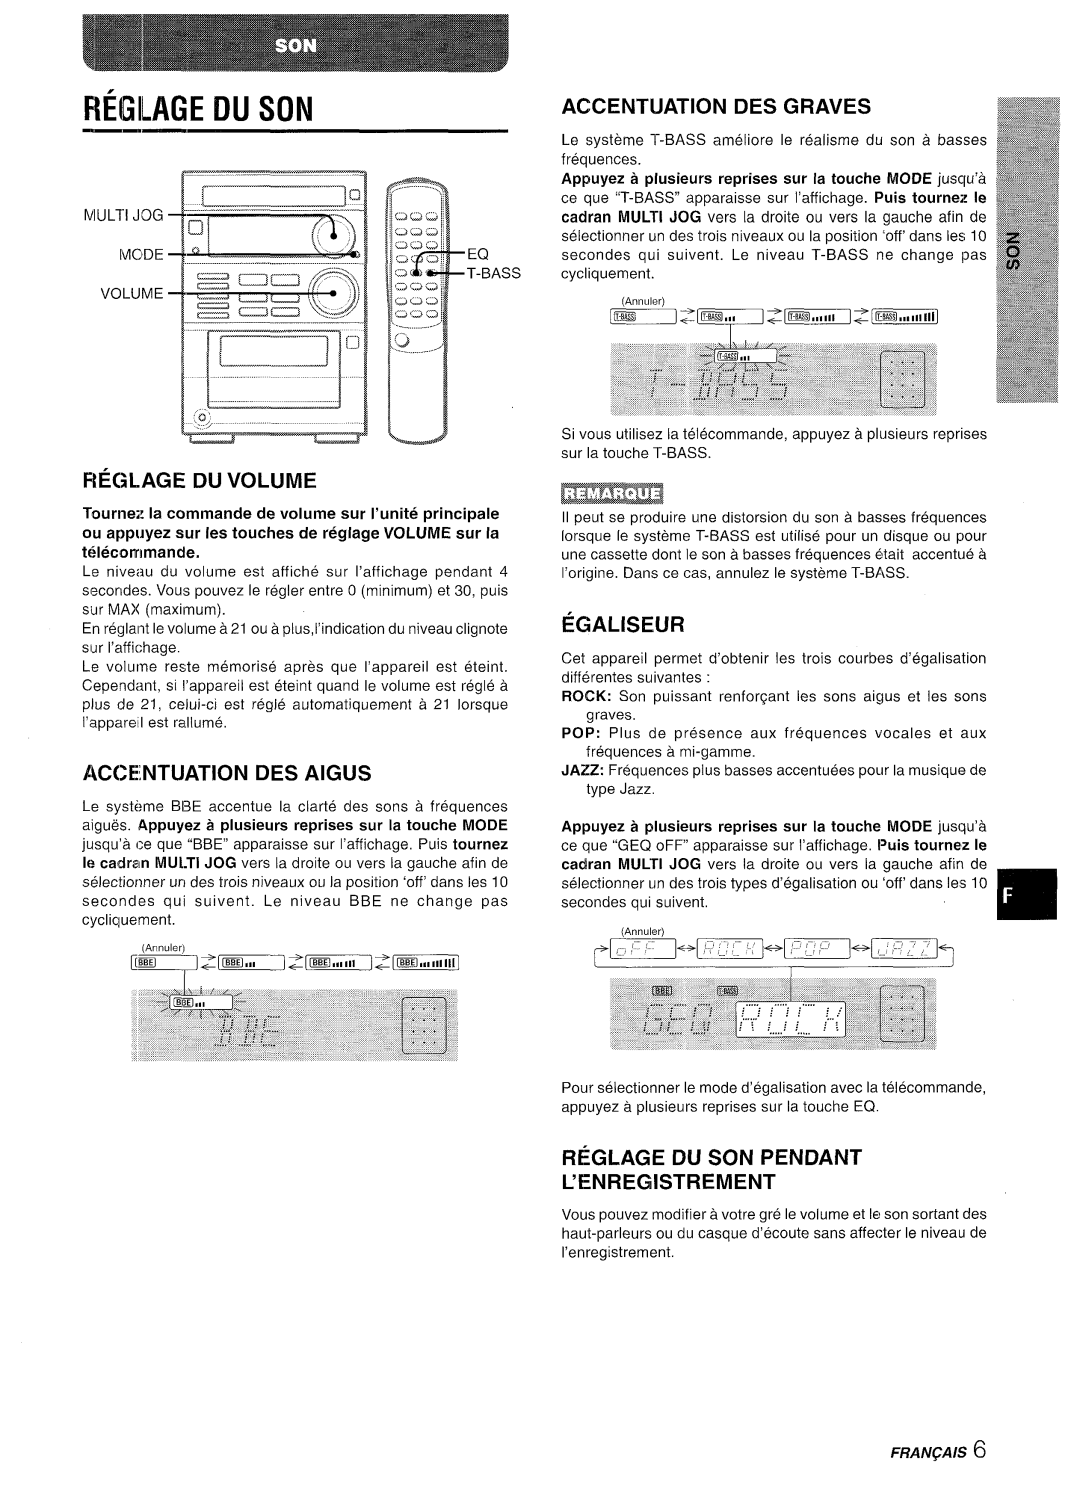 Aiwa XR-M35 manual Reglage In Son, Reglage Du Volume, Accentuation Des Aigus, Accentuation Des Graves, Egaliseur, Franqals 